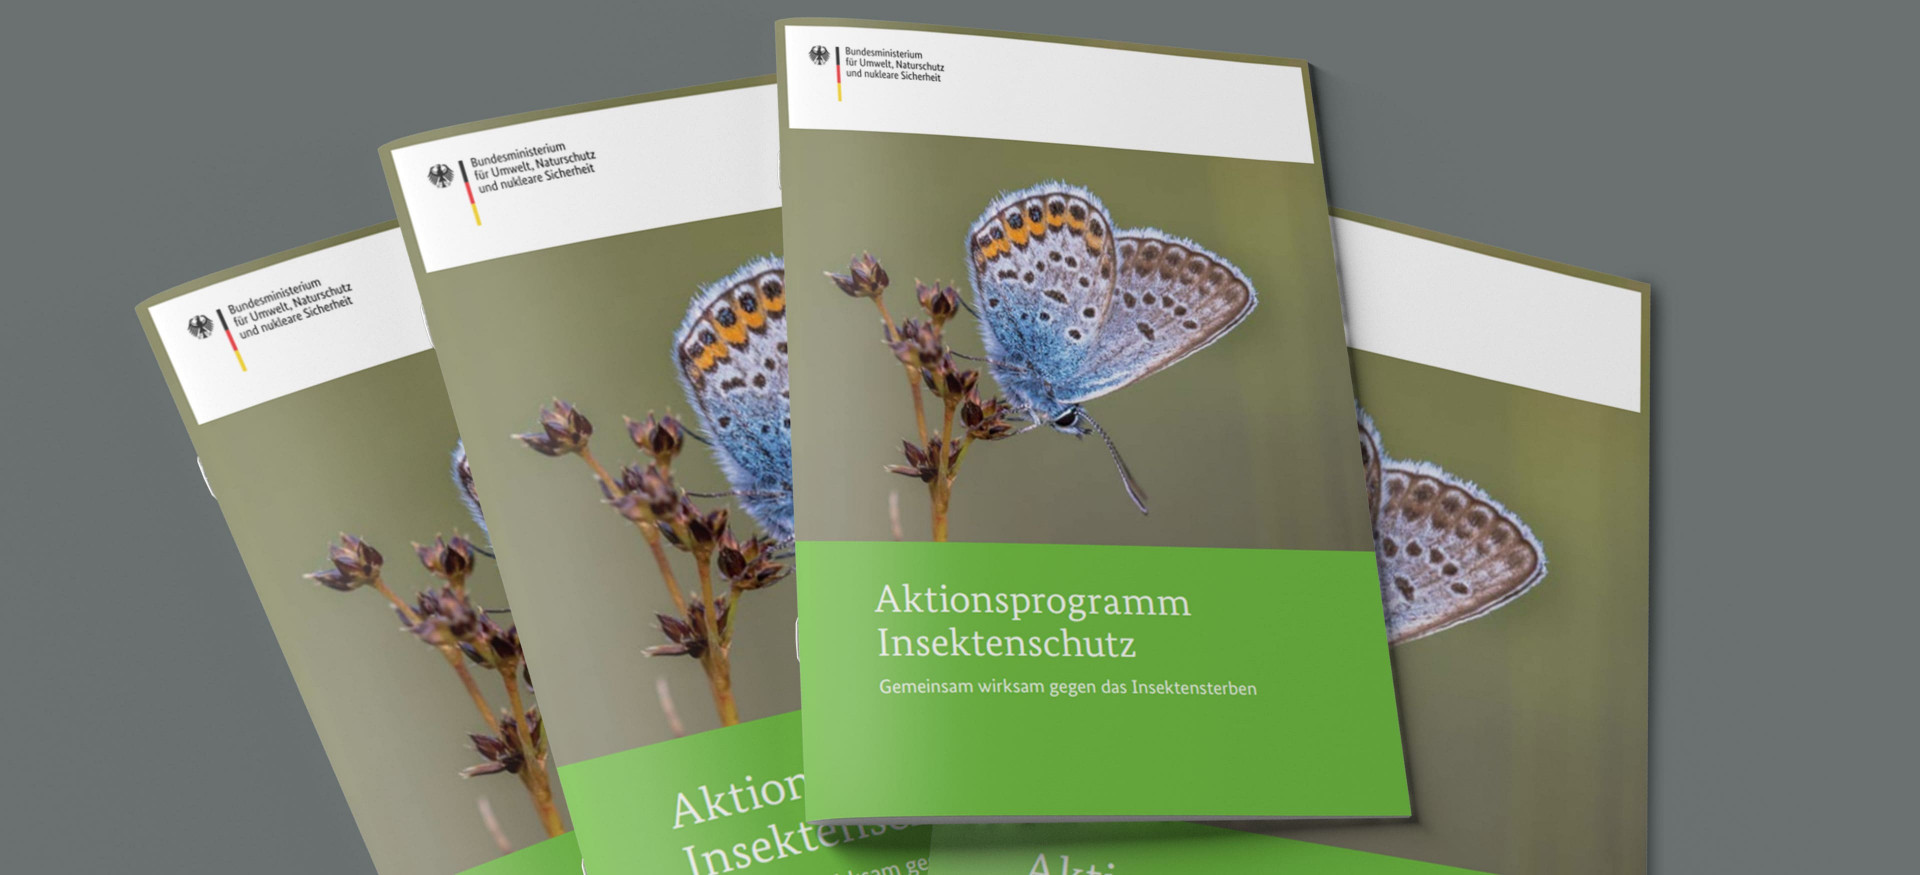 Das Bild zeigt einen Stapel Broschüren mit dem Titel "Aktionsprogramm Insektenschutz"